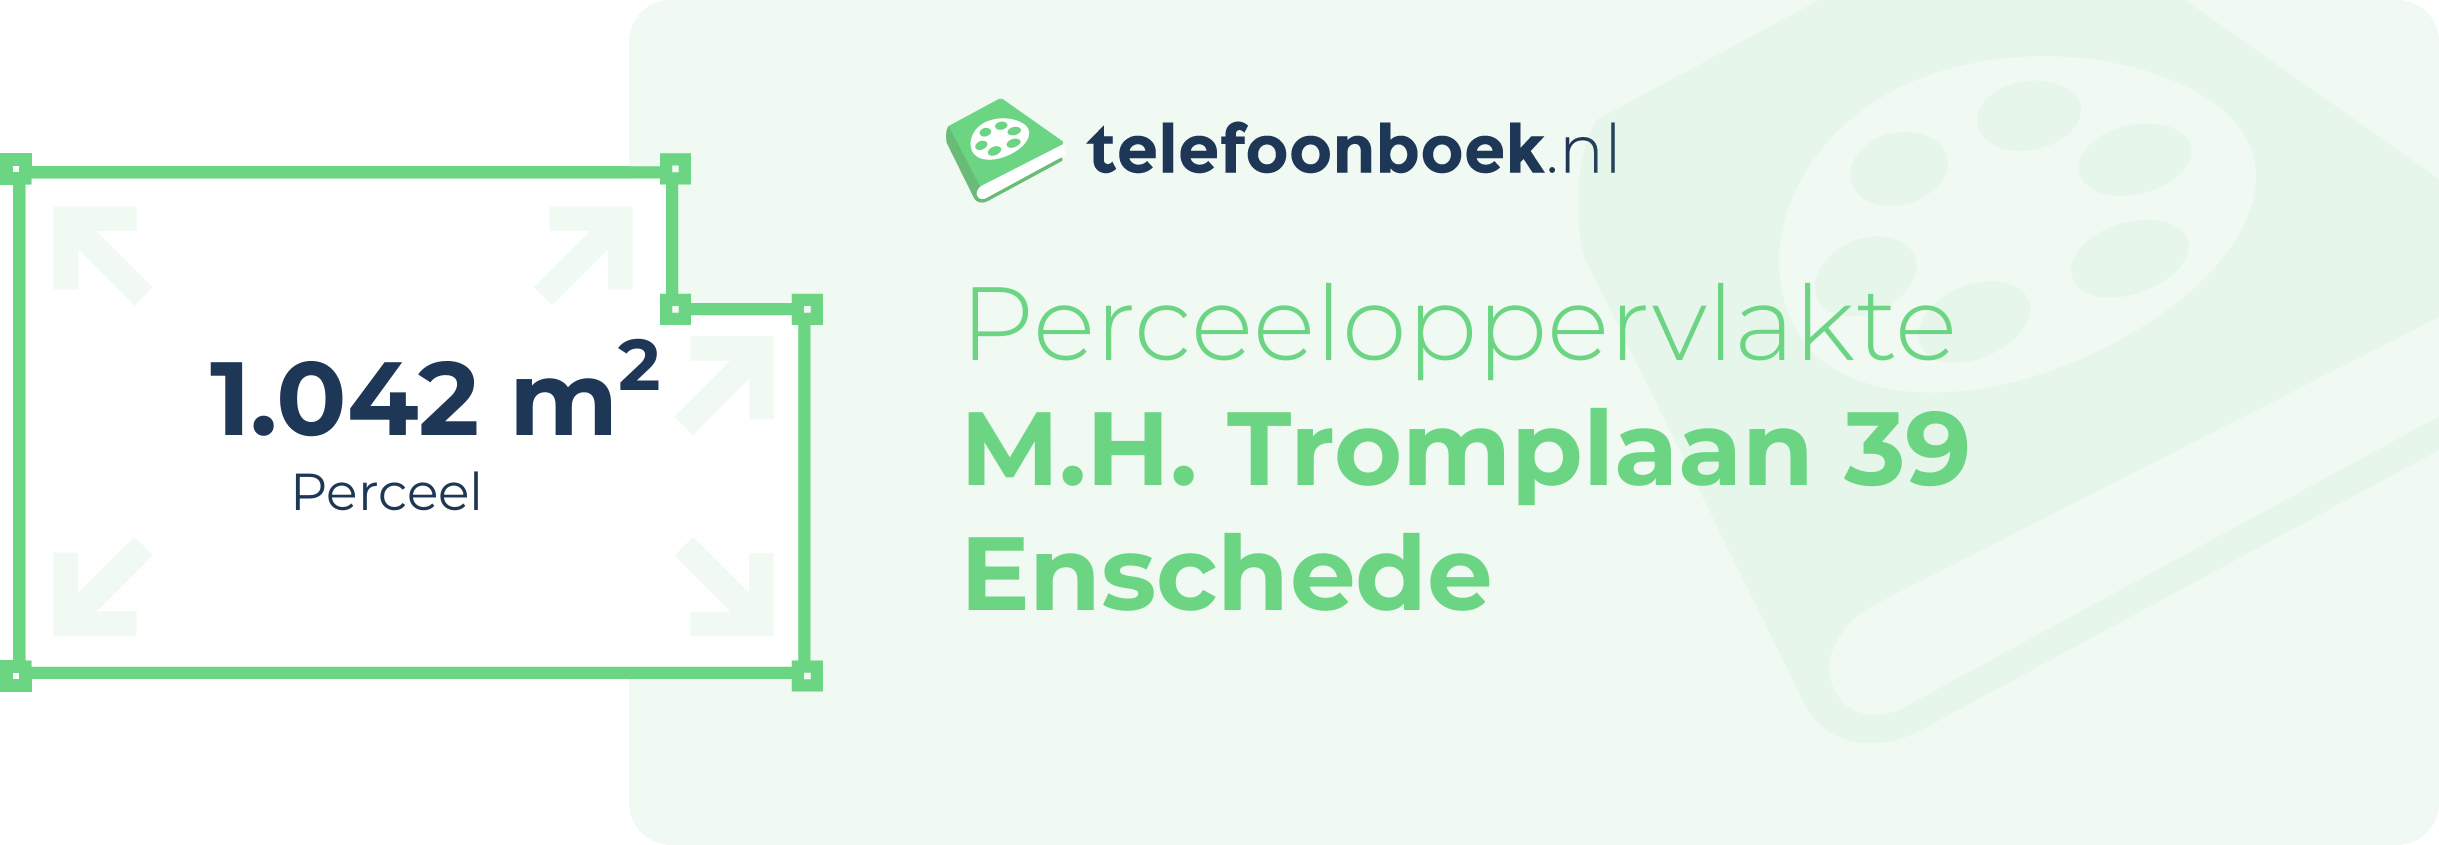 Perceeloppervlakte M.H. Tromplaan 39 Enschede